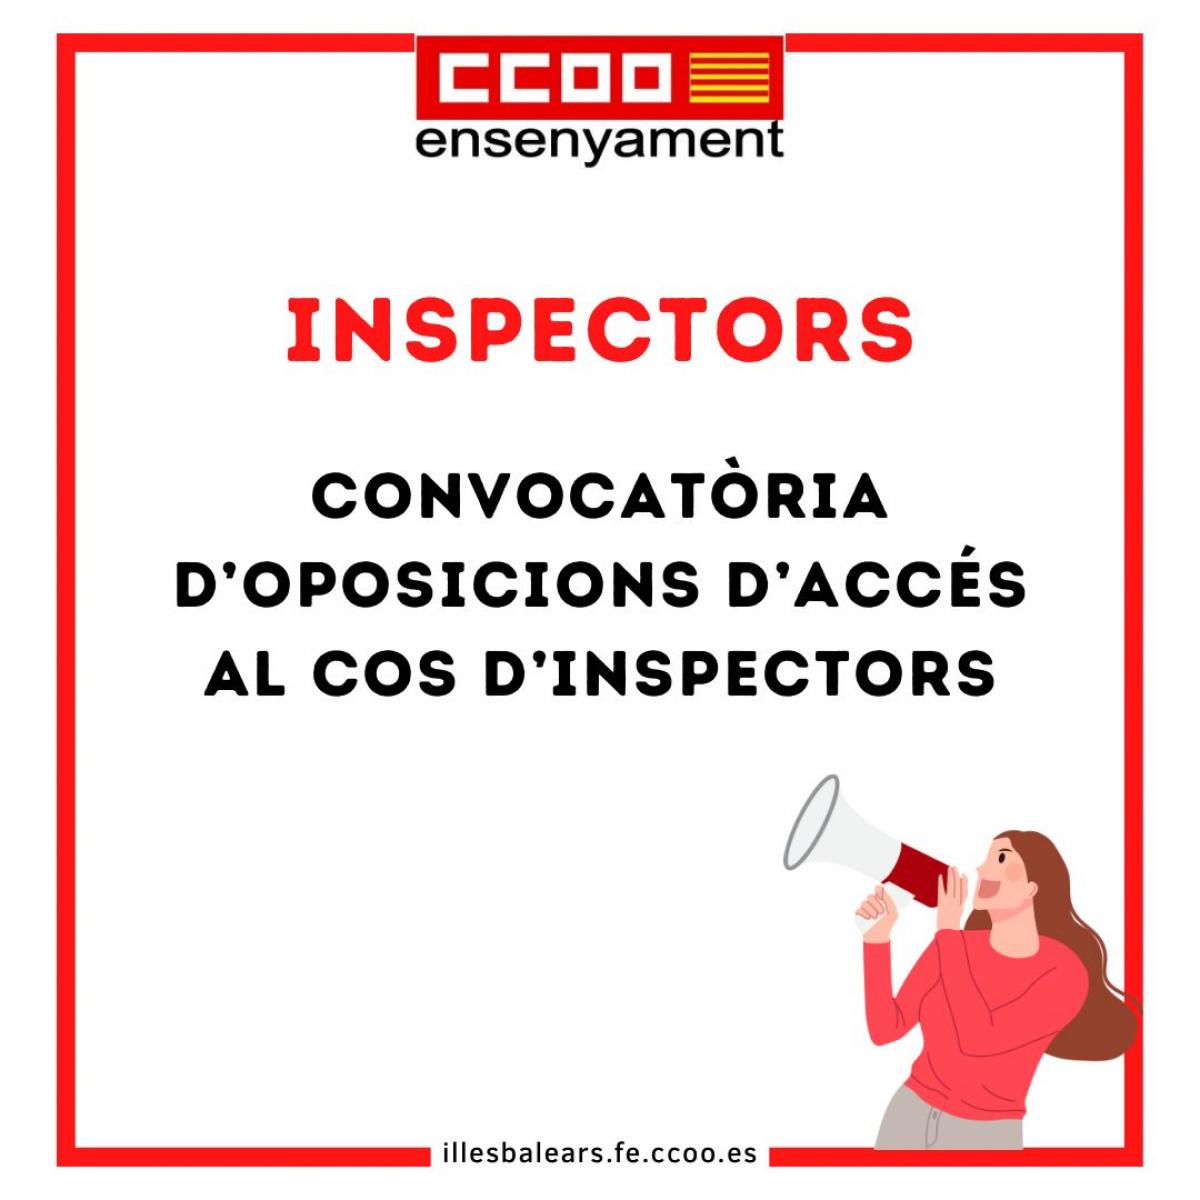 inspectors